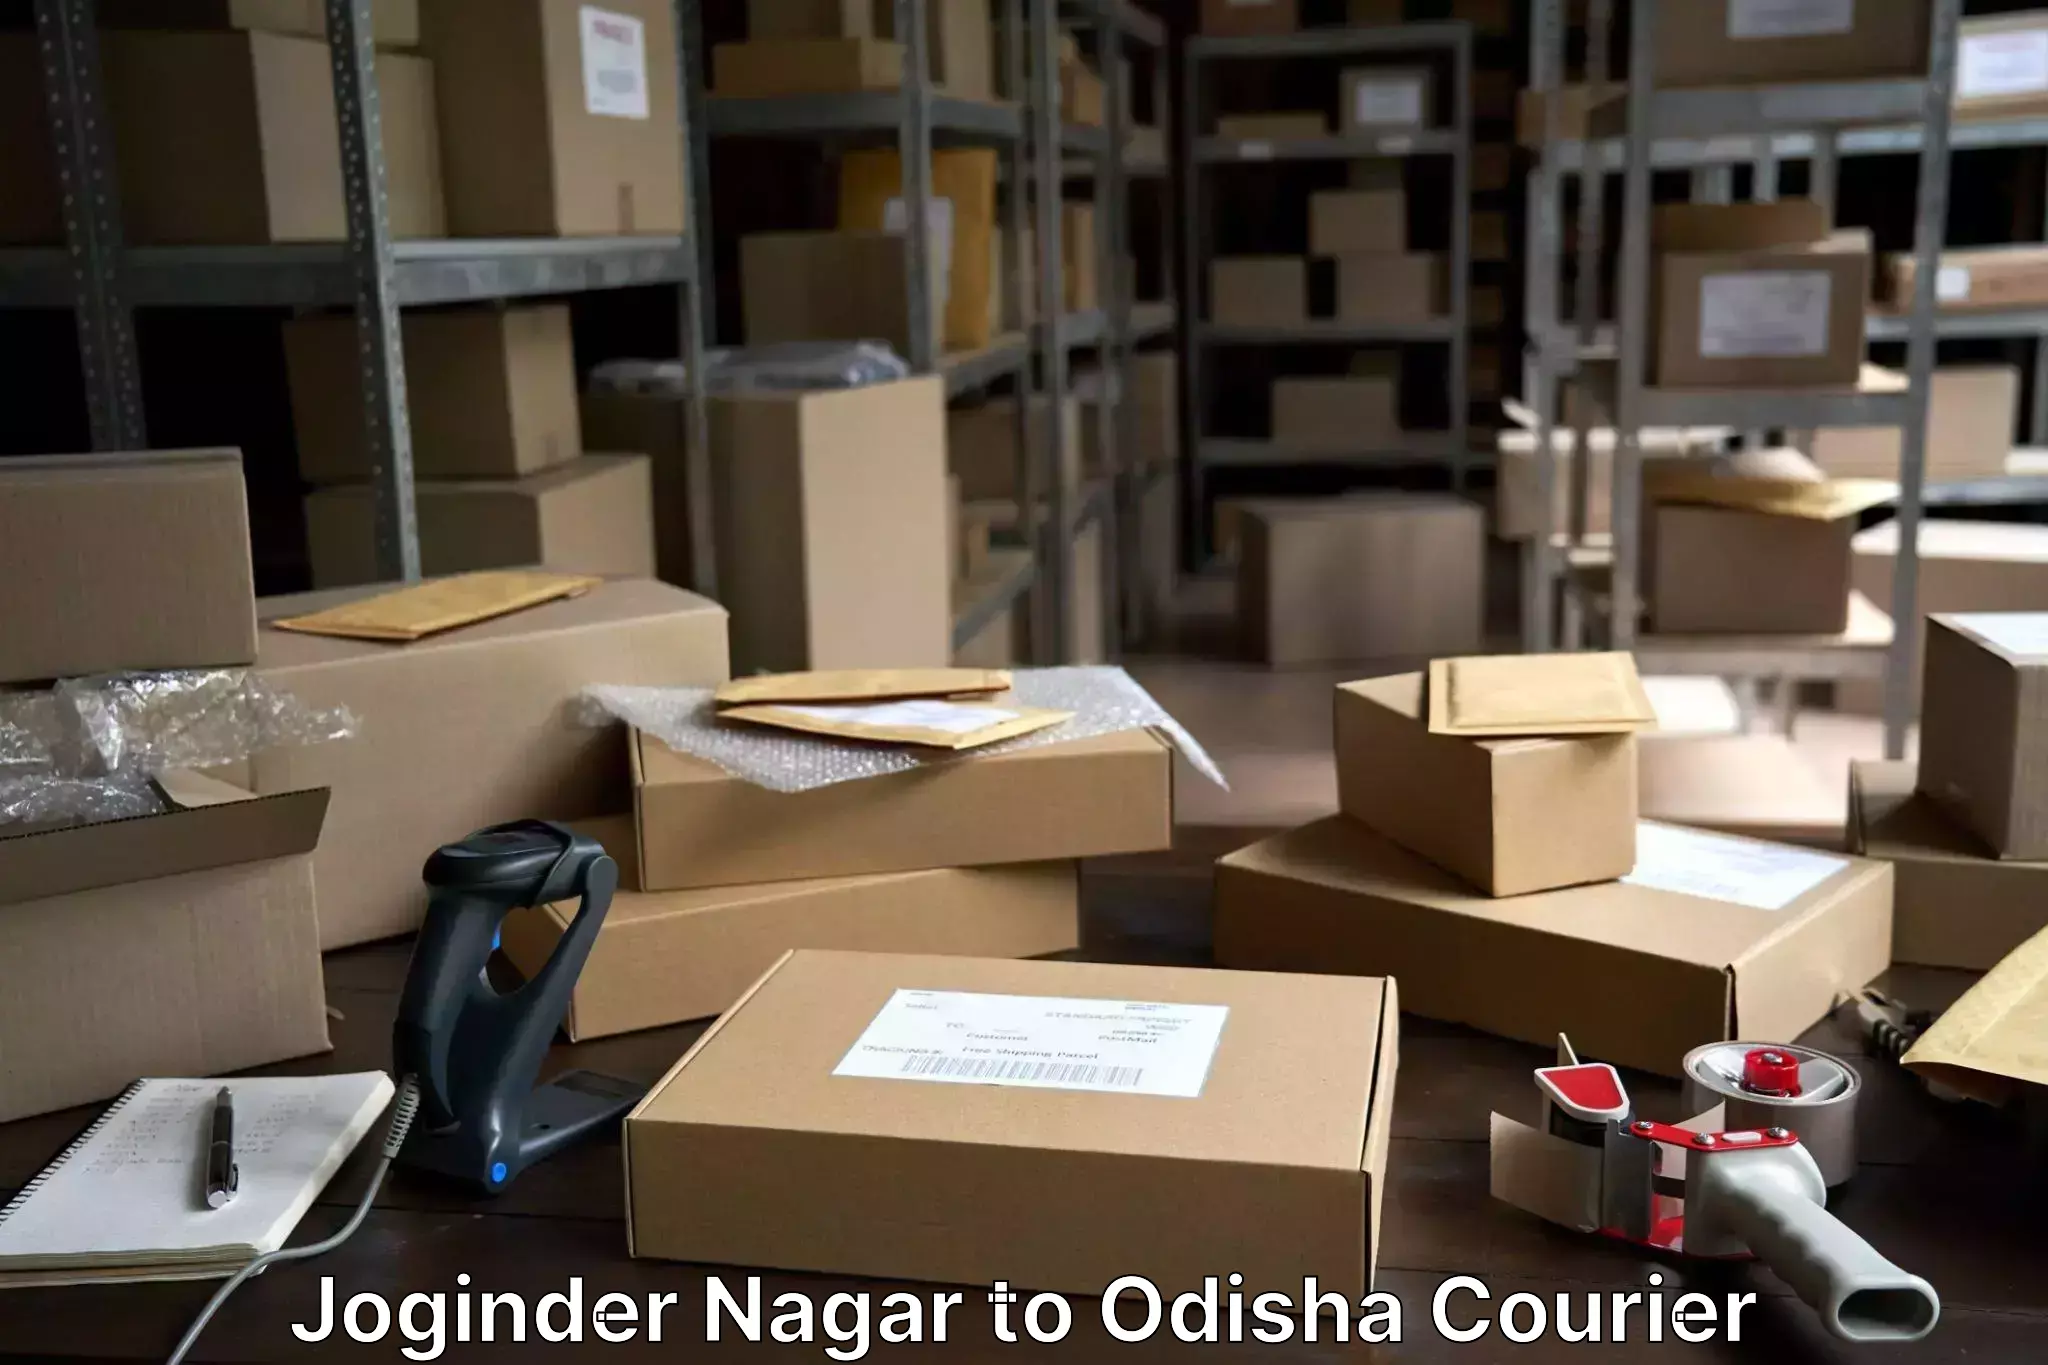 Door-to-door baggage service Joginder Nagar to Raighar